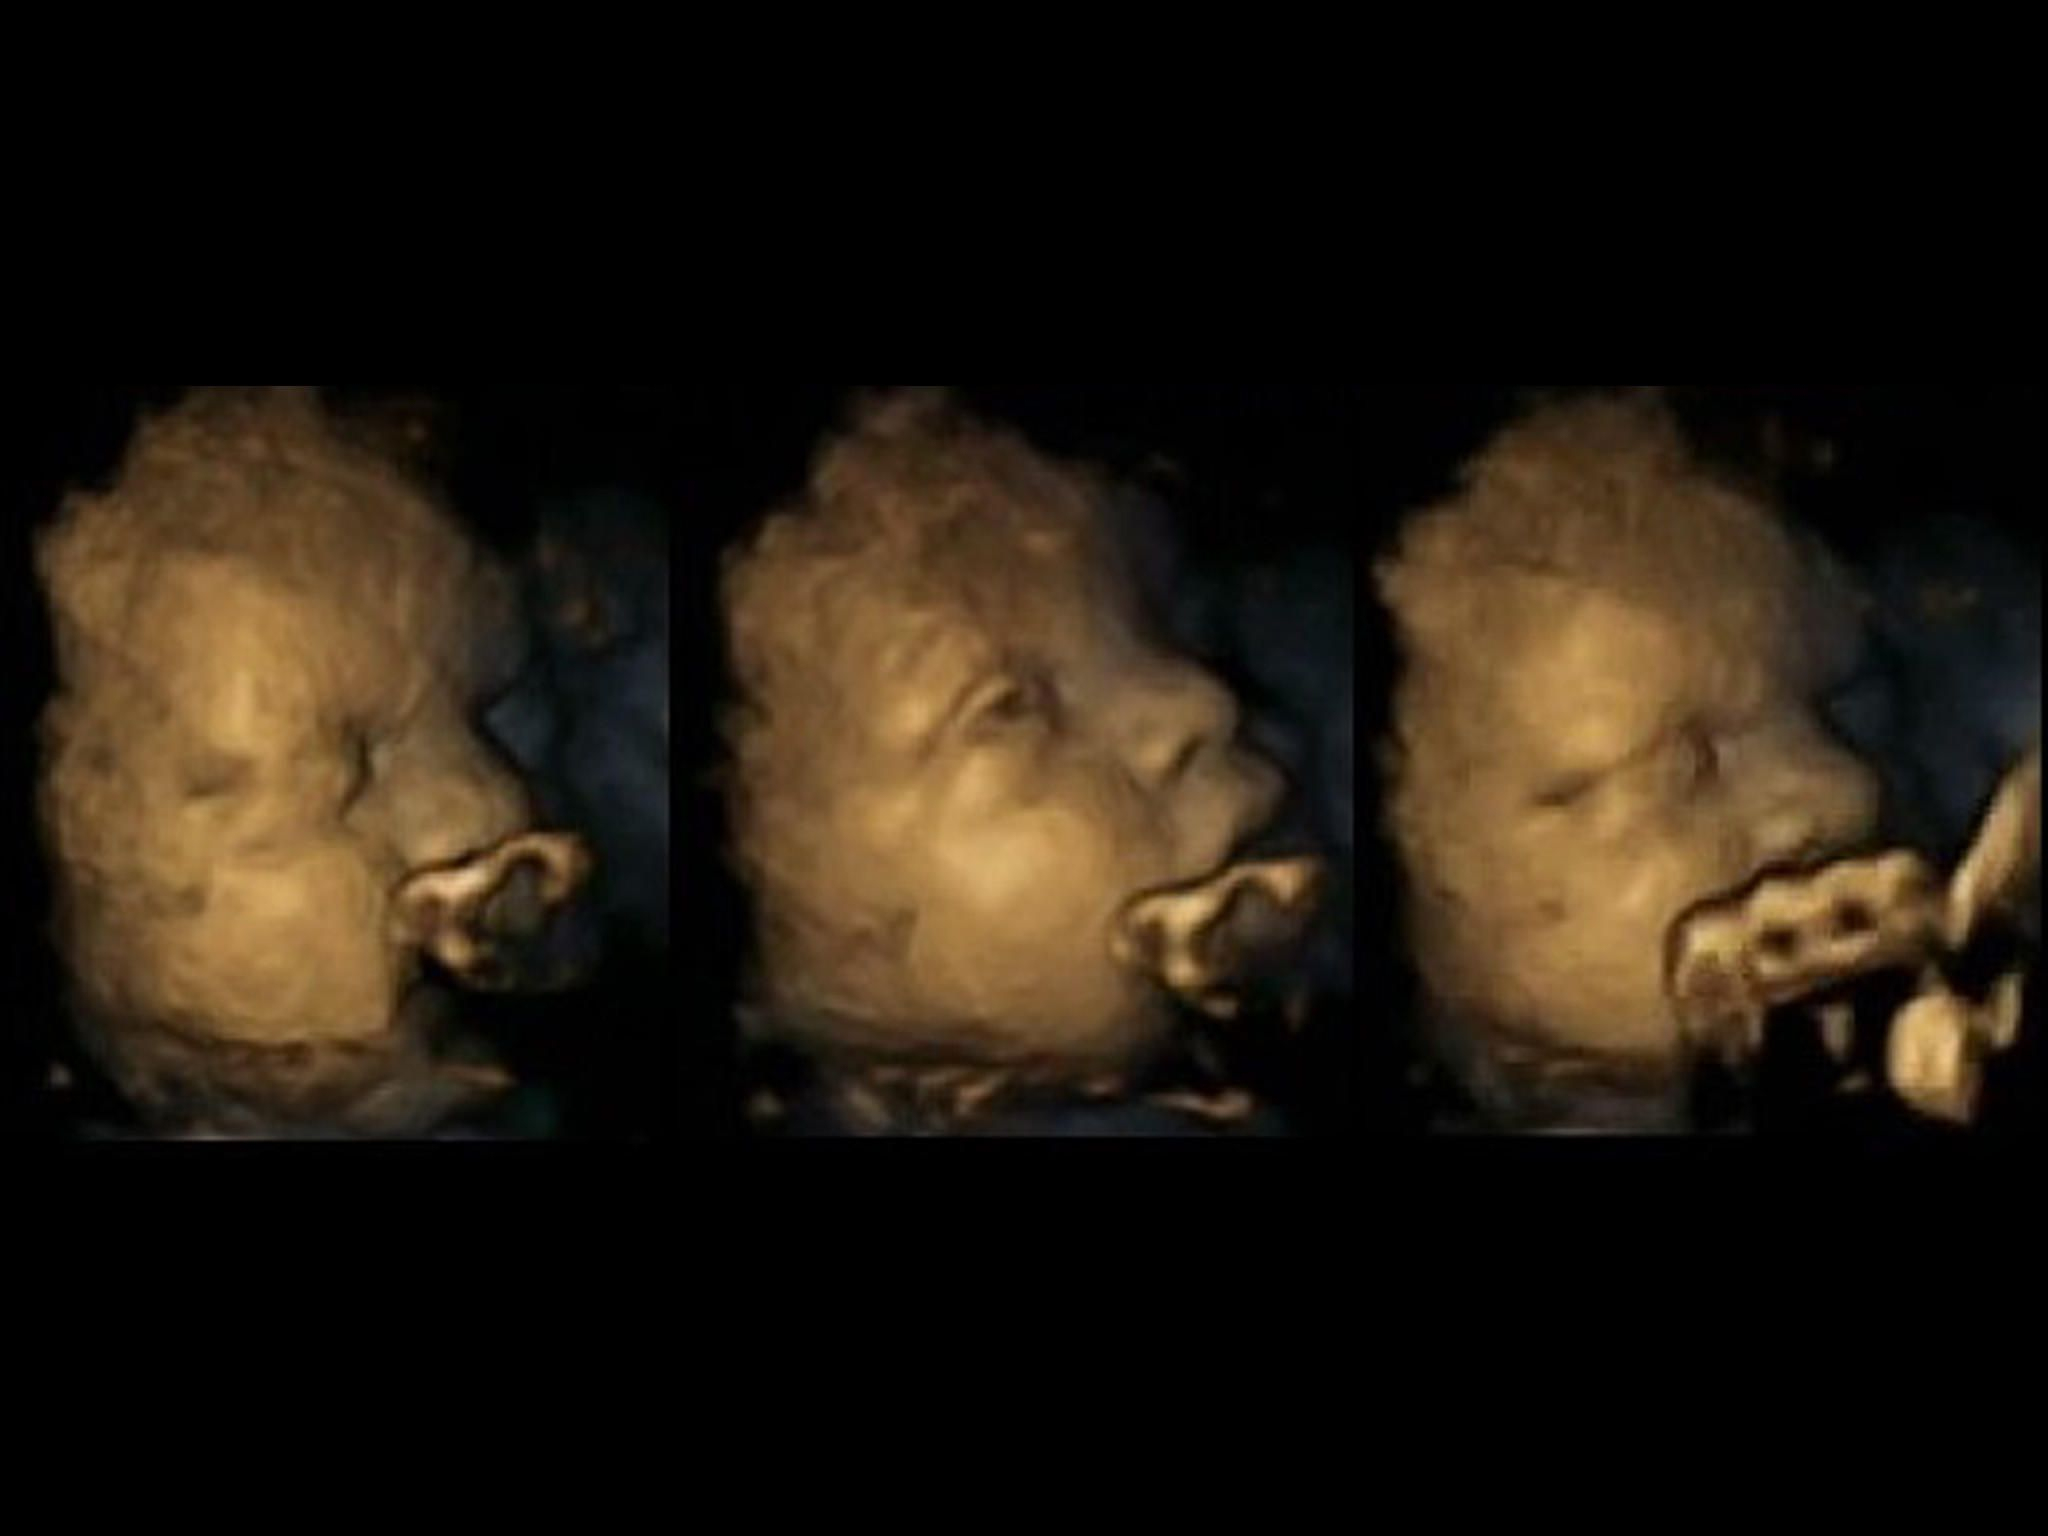 Rauchen In Der Schwangerschaft: Ultraschall-Bilder Zeigen innen Was Passiert Beim Rauchen In Der Schwangerschaft